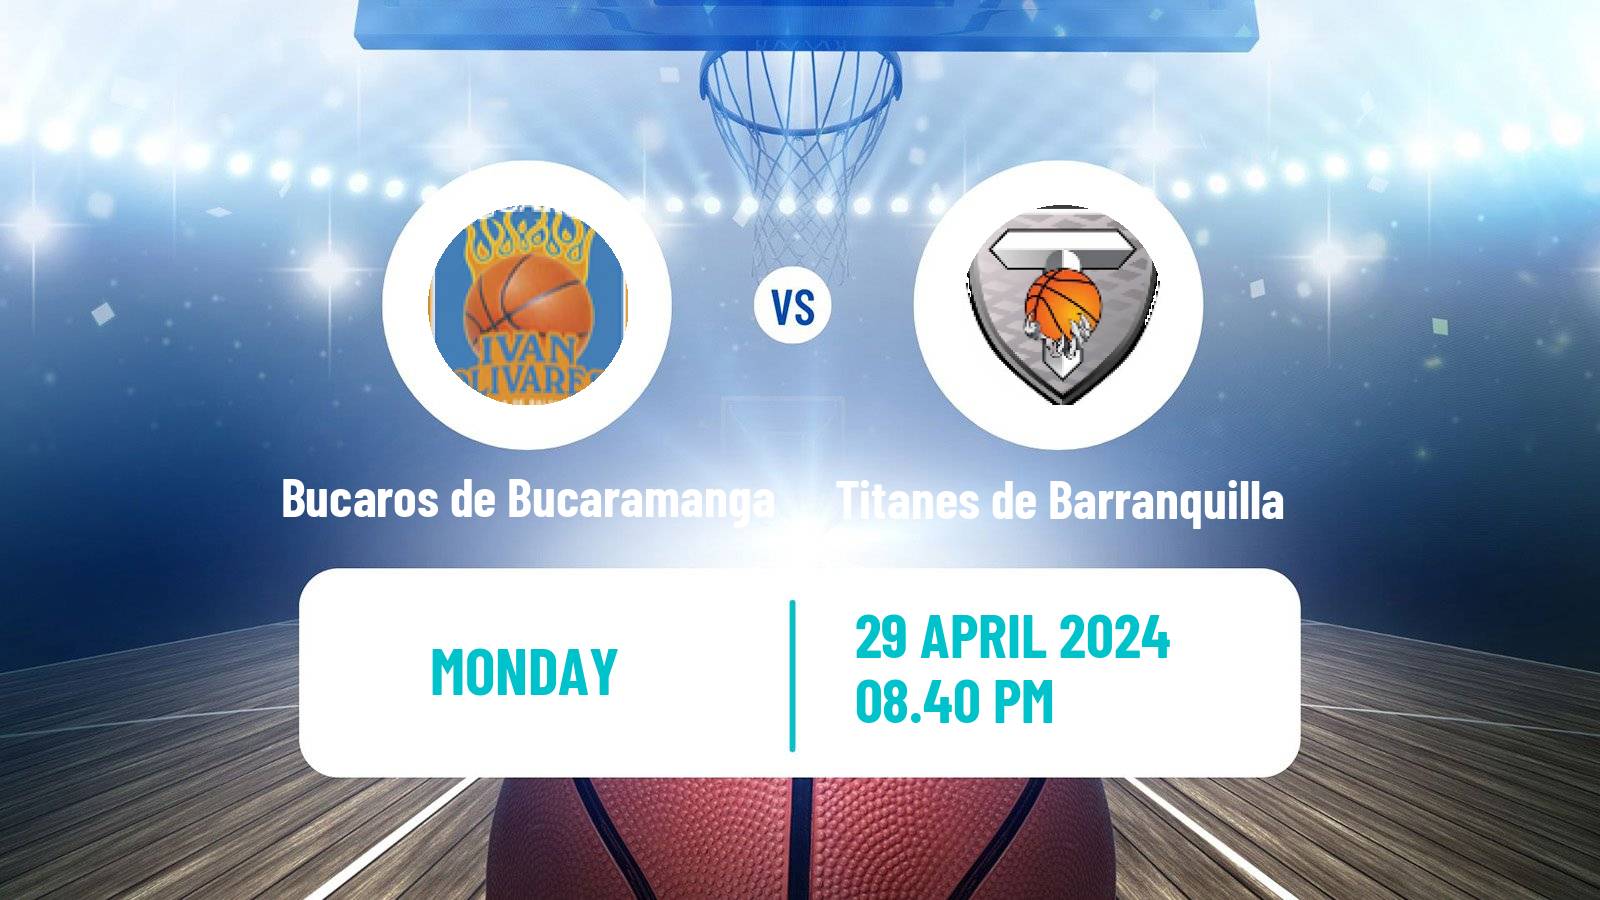 Basketball Colombian LBP Basketball Bucaros de Bucaramanga - Titanes de Barranquilla